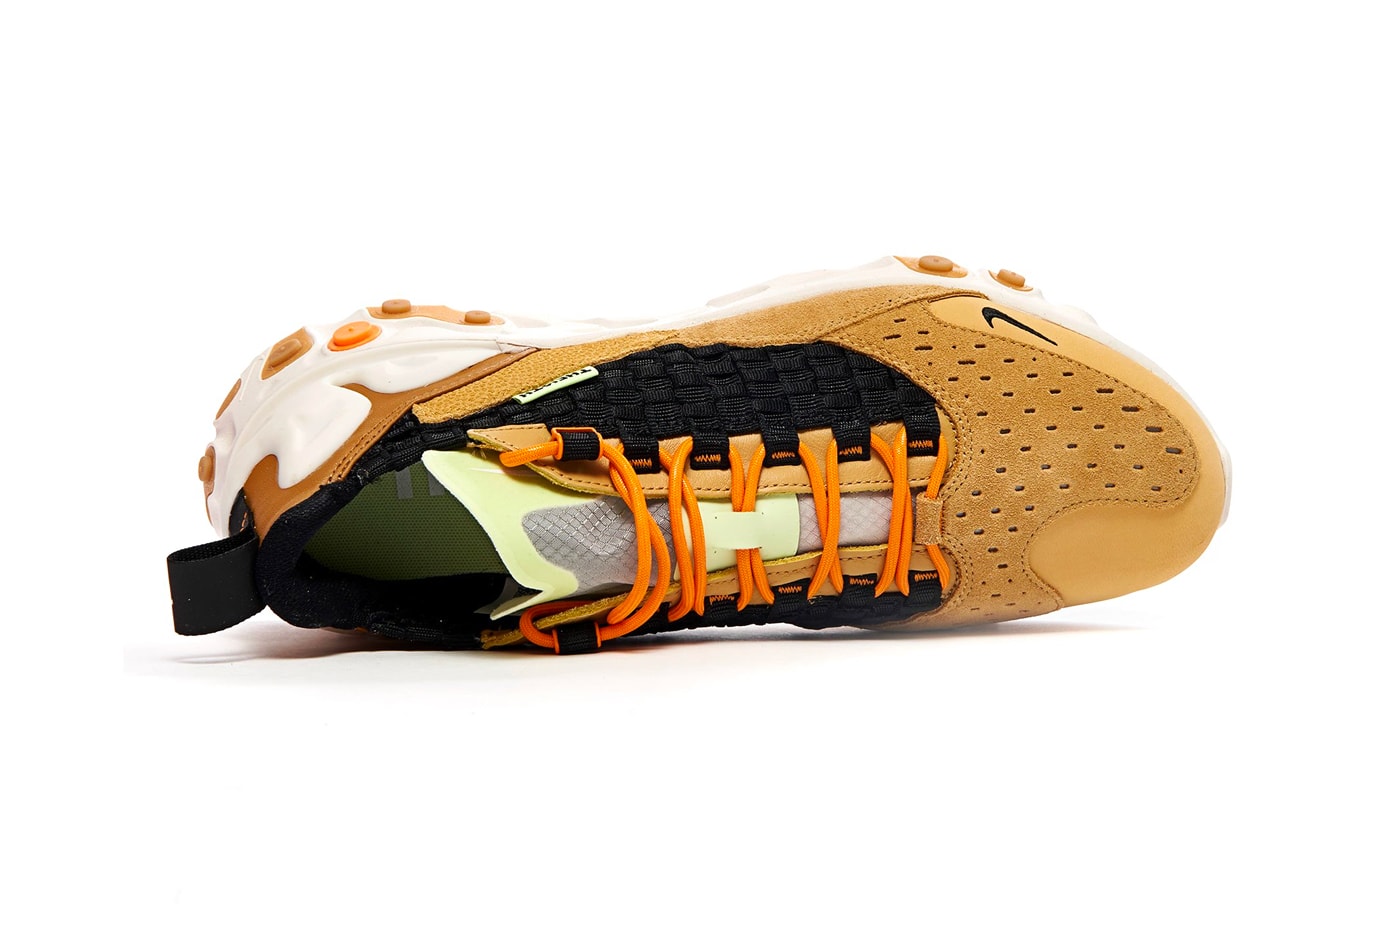 Nike React Sertu Club Gold Black-Wheat-Bright Ceramic AT5301-700 Release Info Date